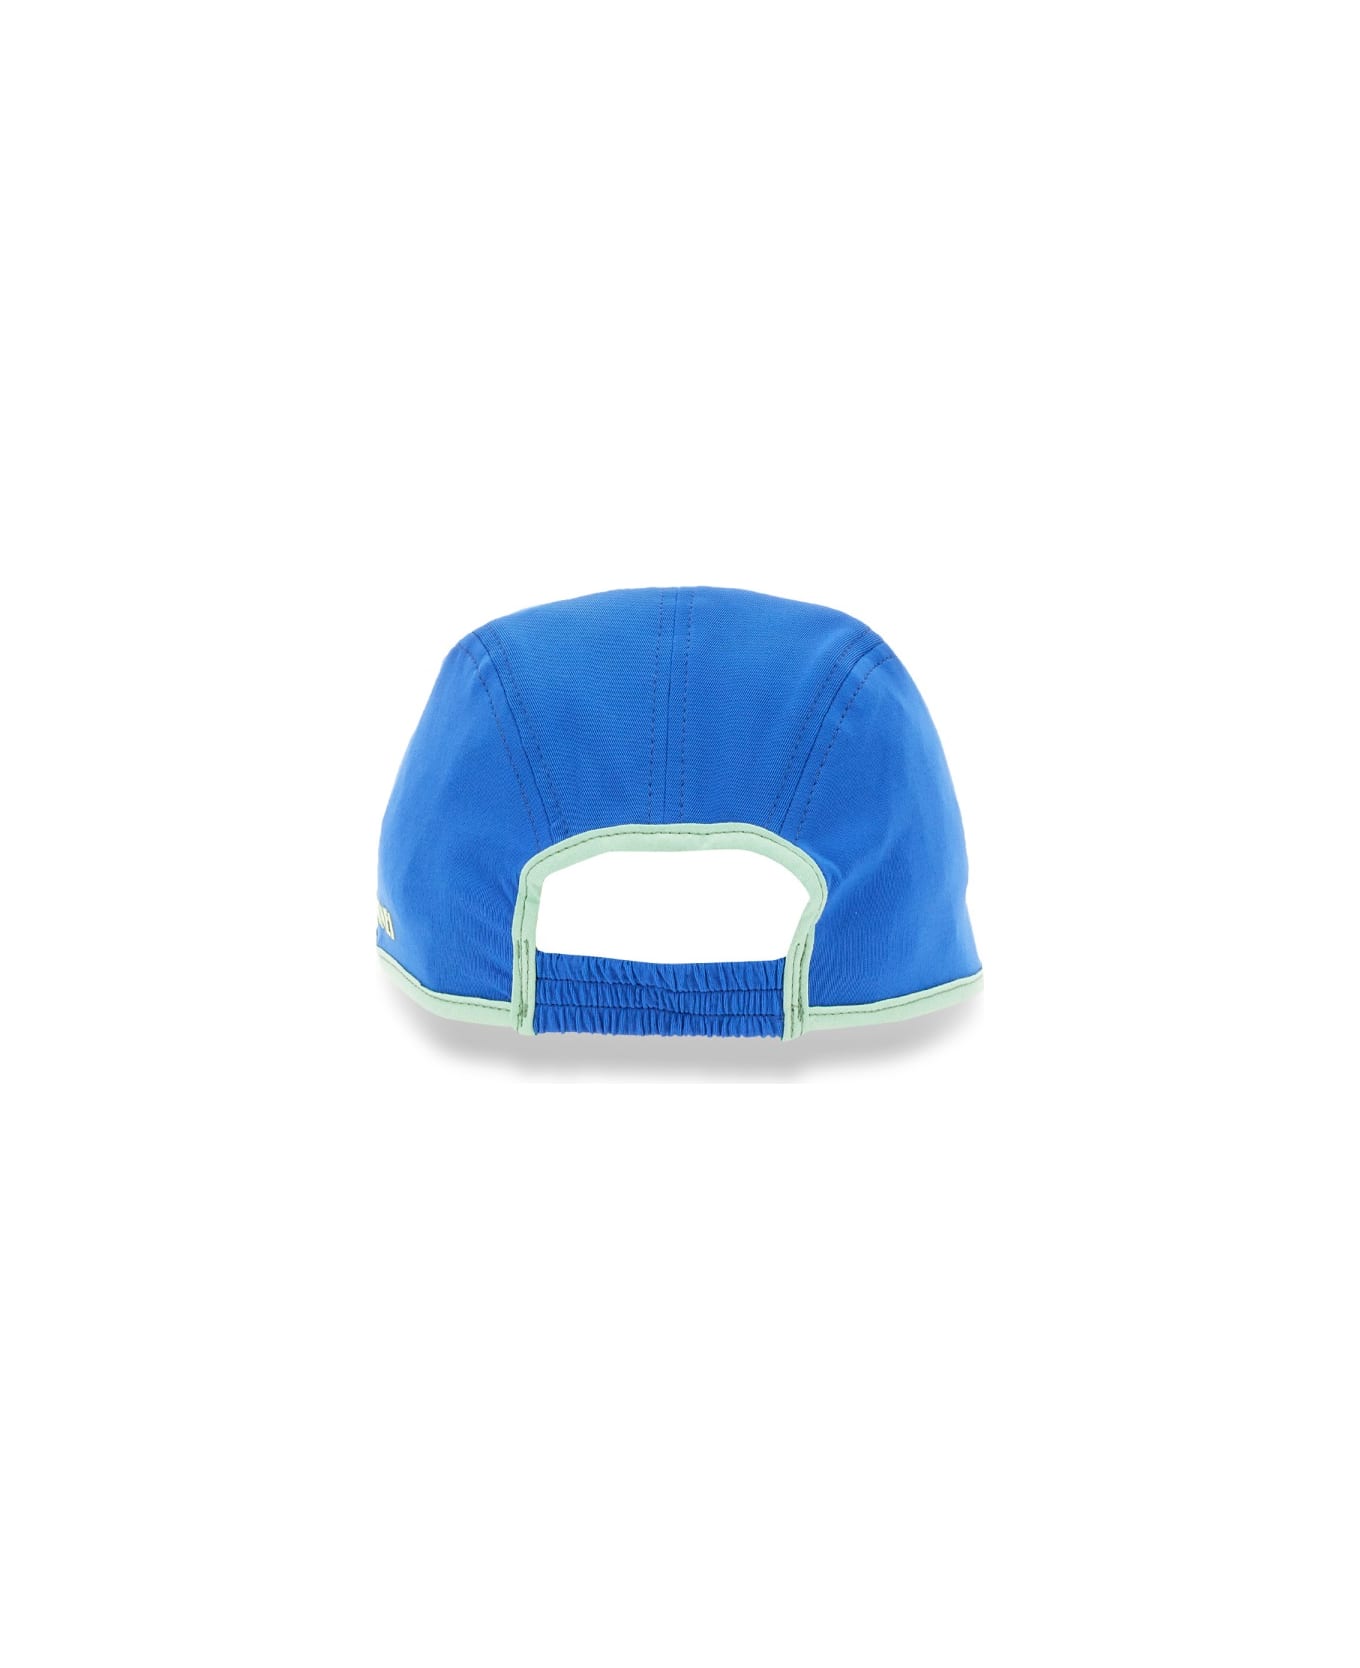 Sunnei Hat With Visor - BLUE